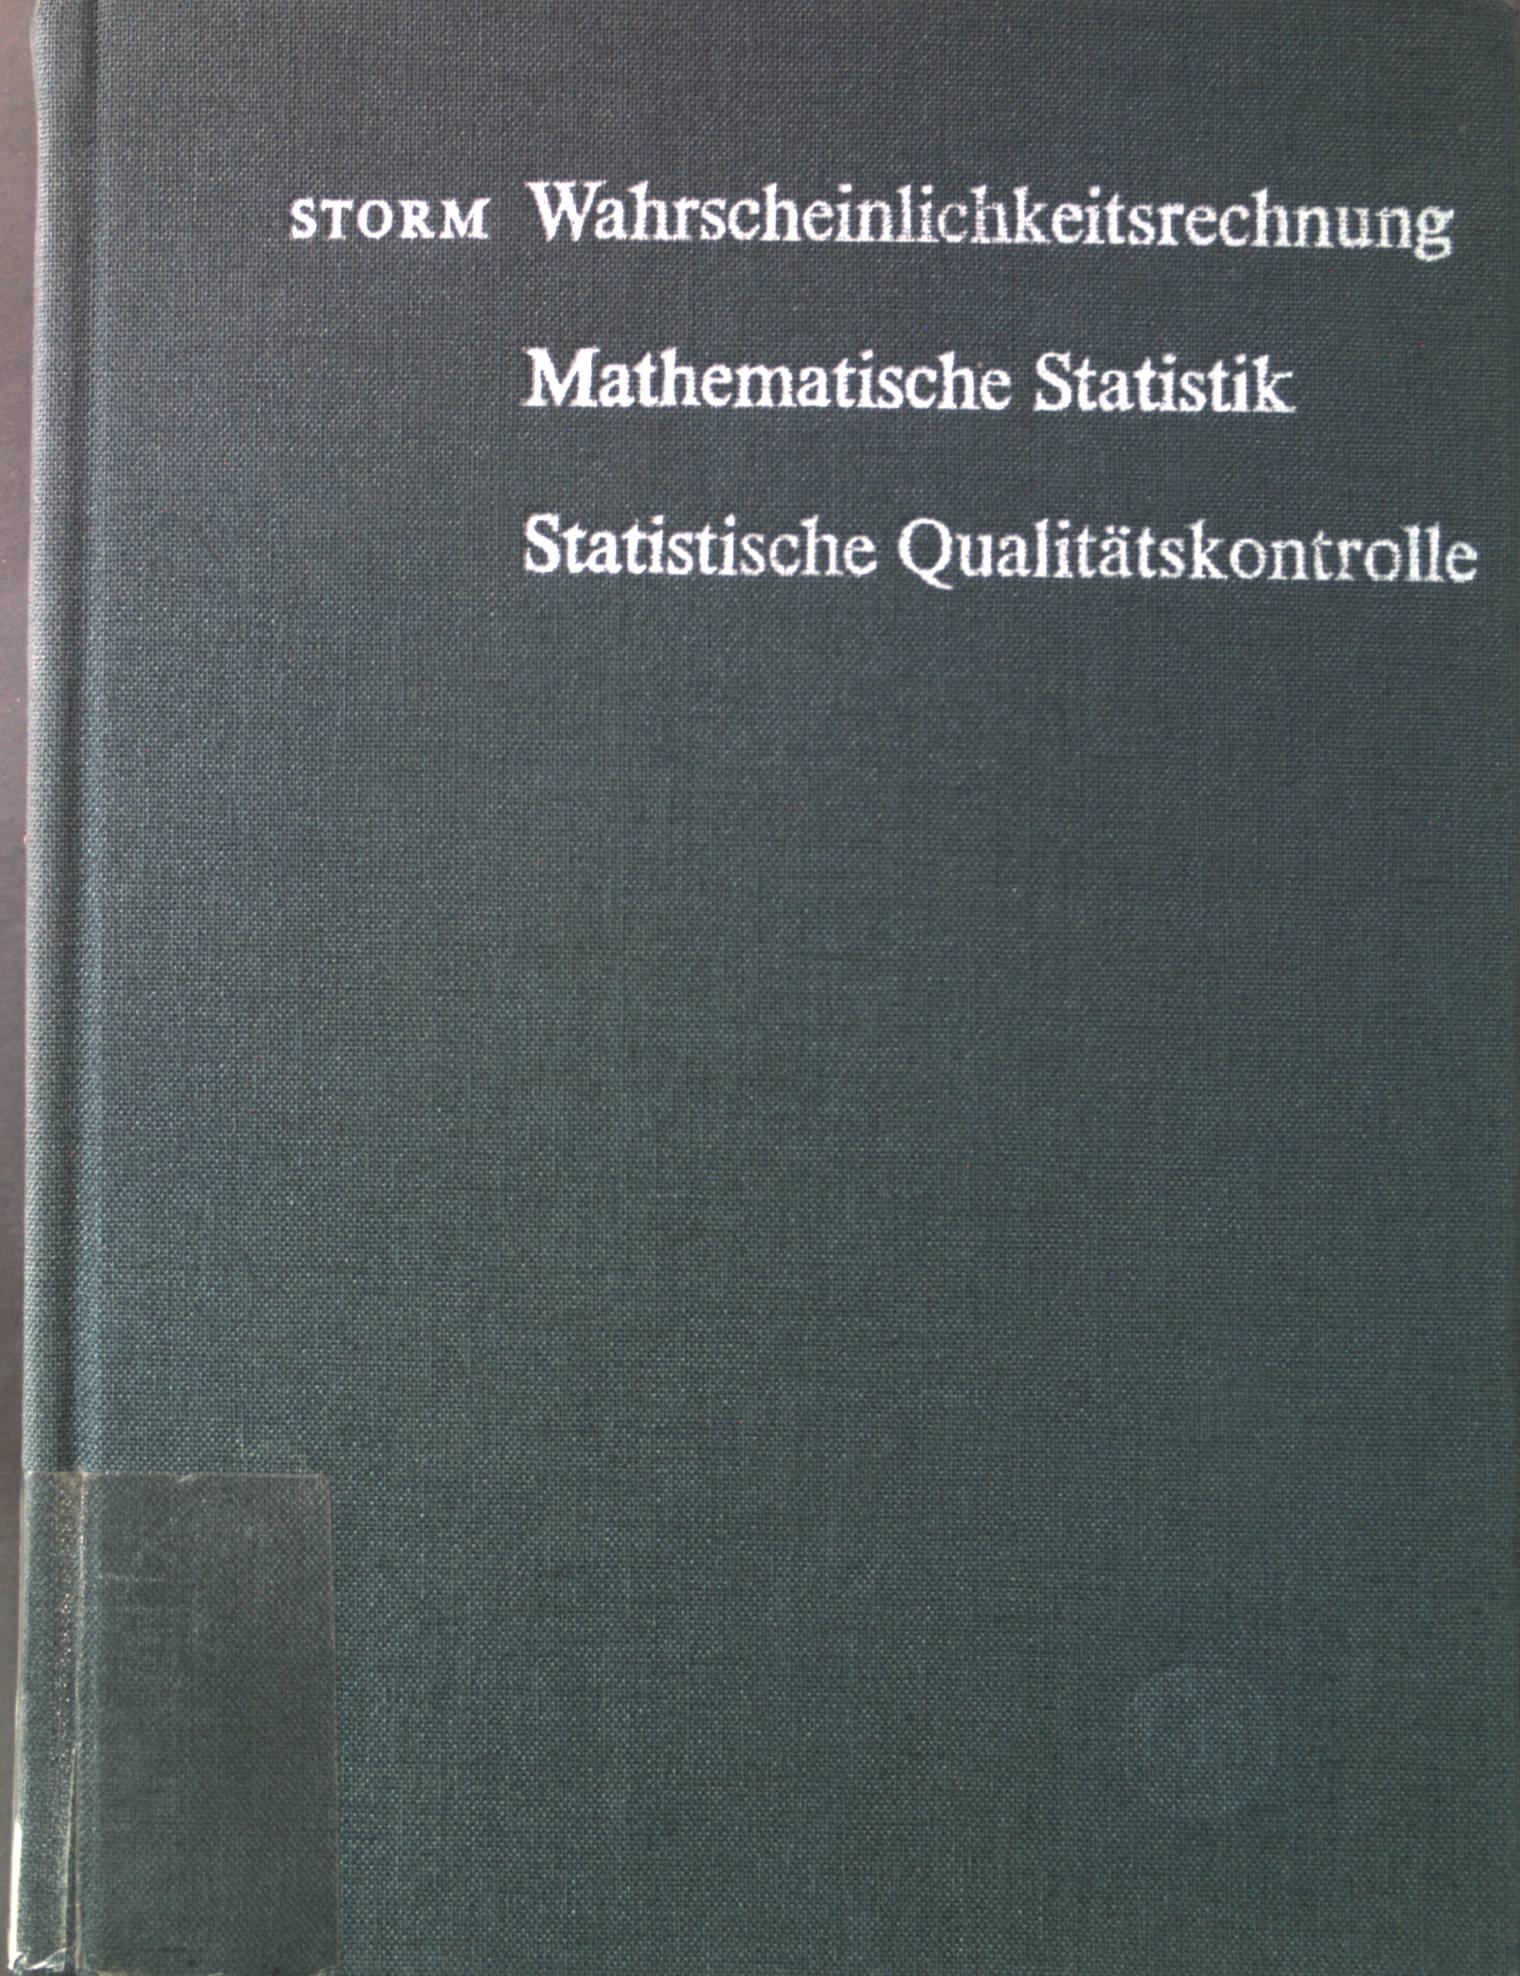 Wahrscheinlichkeitsrechnung, mathematische Statistik und statistische Qualitätskontrolle. Mathematik für Ingenieure 9. Aufl. - Storm, Regina